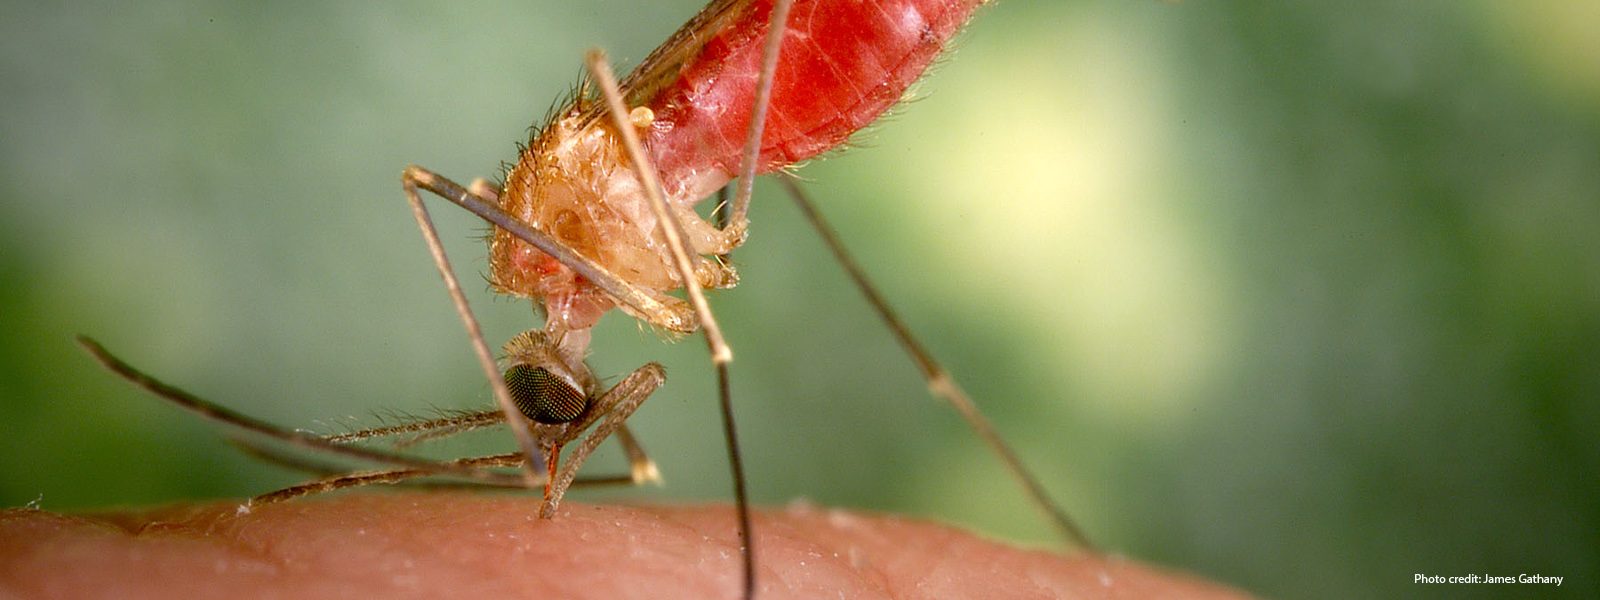 A mosquito biting skin